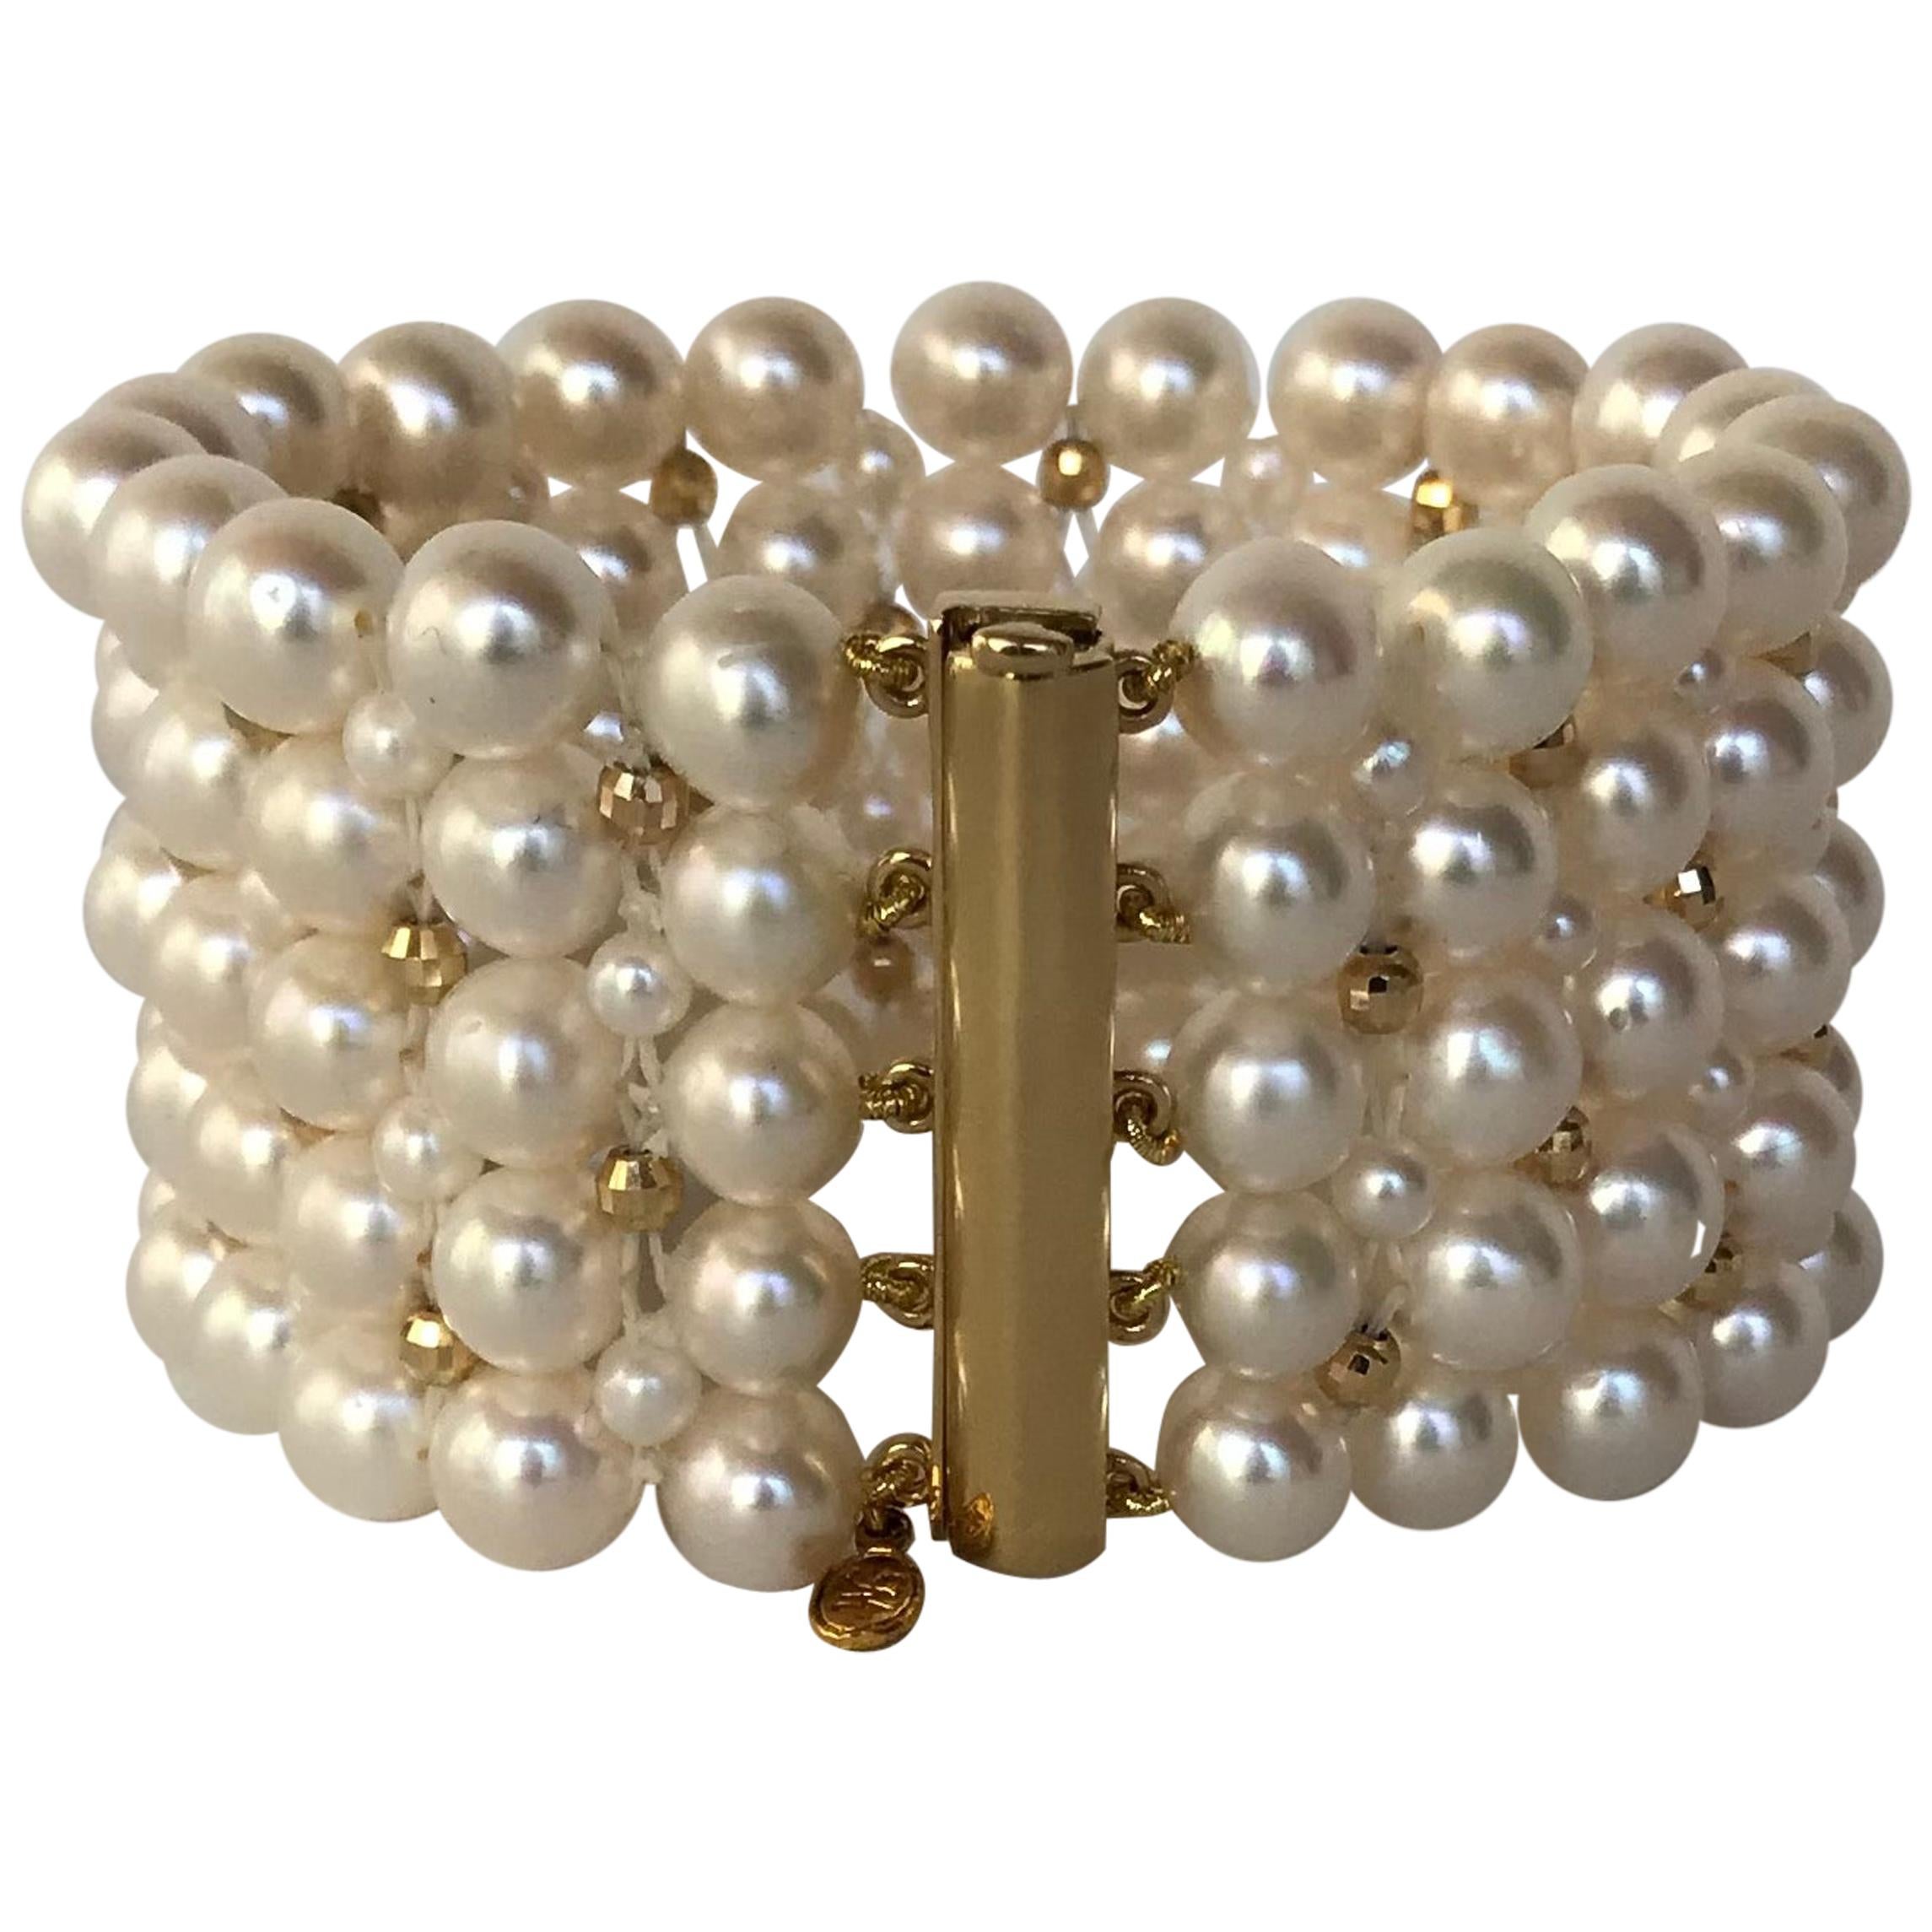 Marina J Atemberaubendes gewebtes Perlenarmband aus 14 Karat Gelbgold mit Perlen und Verschluss